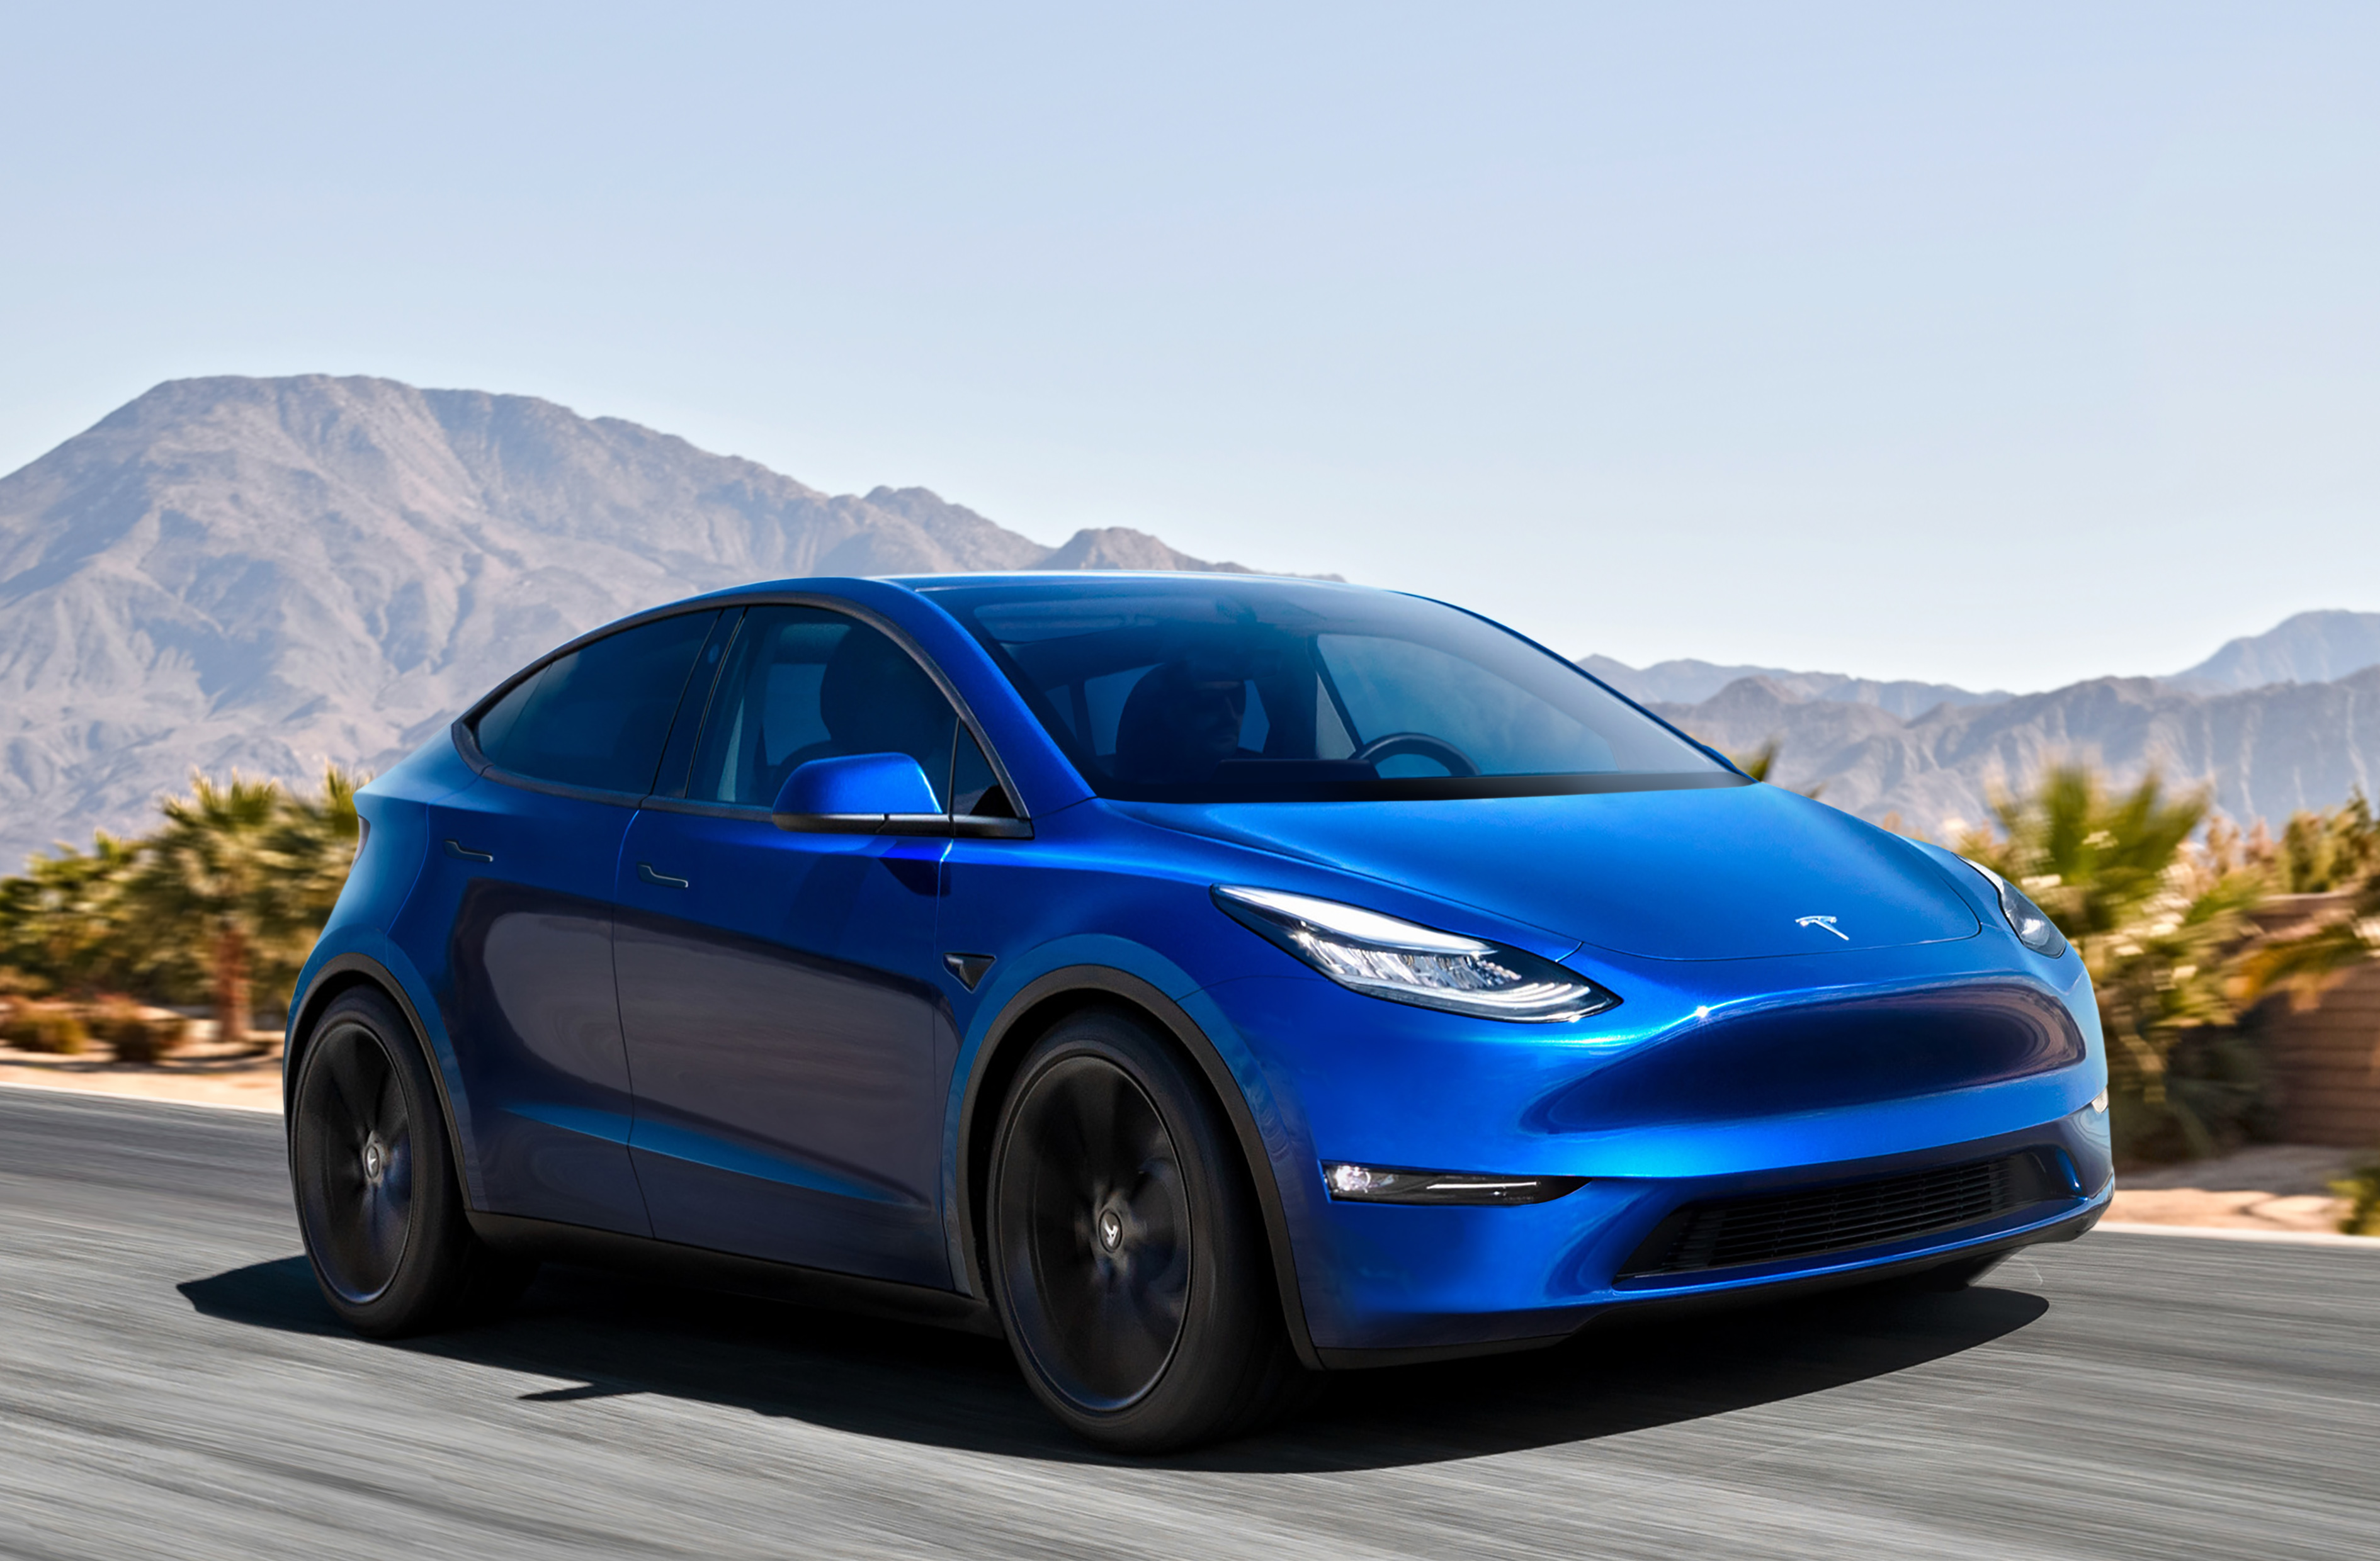 Goedkope Tesla 'Model 2' komt snel, maar ook weer niet